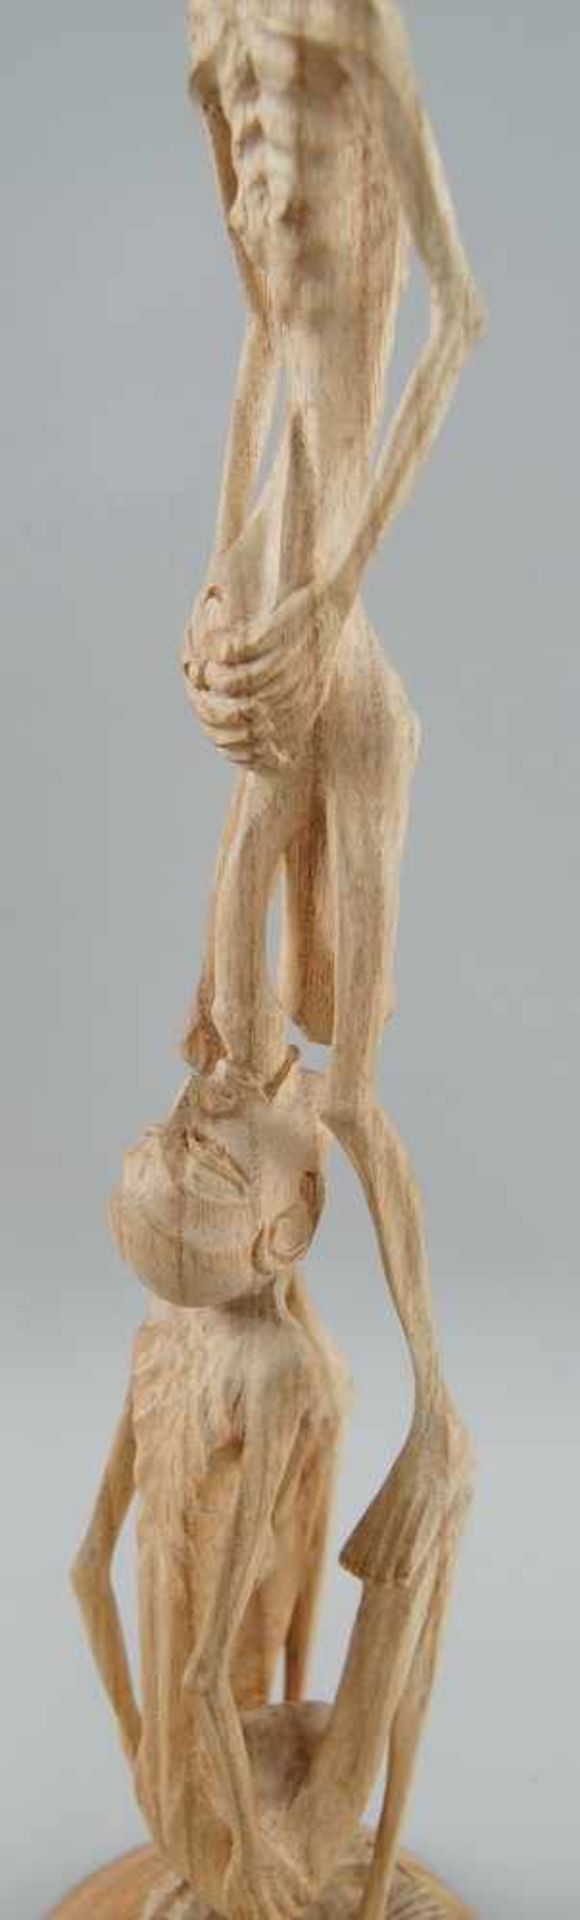 Fruchtbarkeitsskulptur / Ritualskulptur, Holz geschnitzt, H 42 cm - Bild 3 aus 4